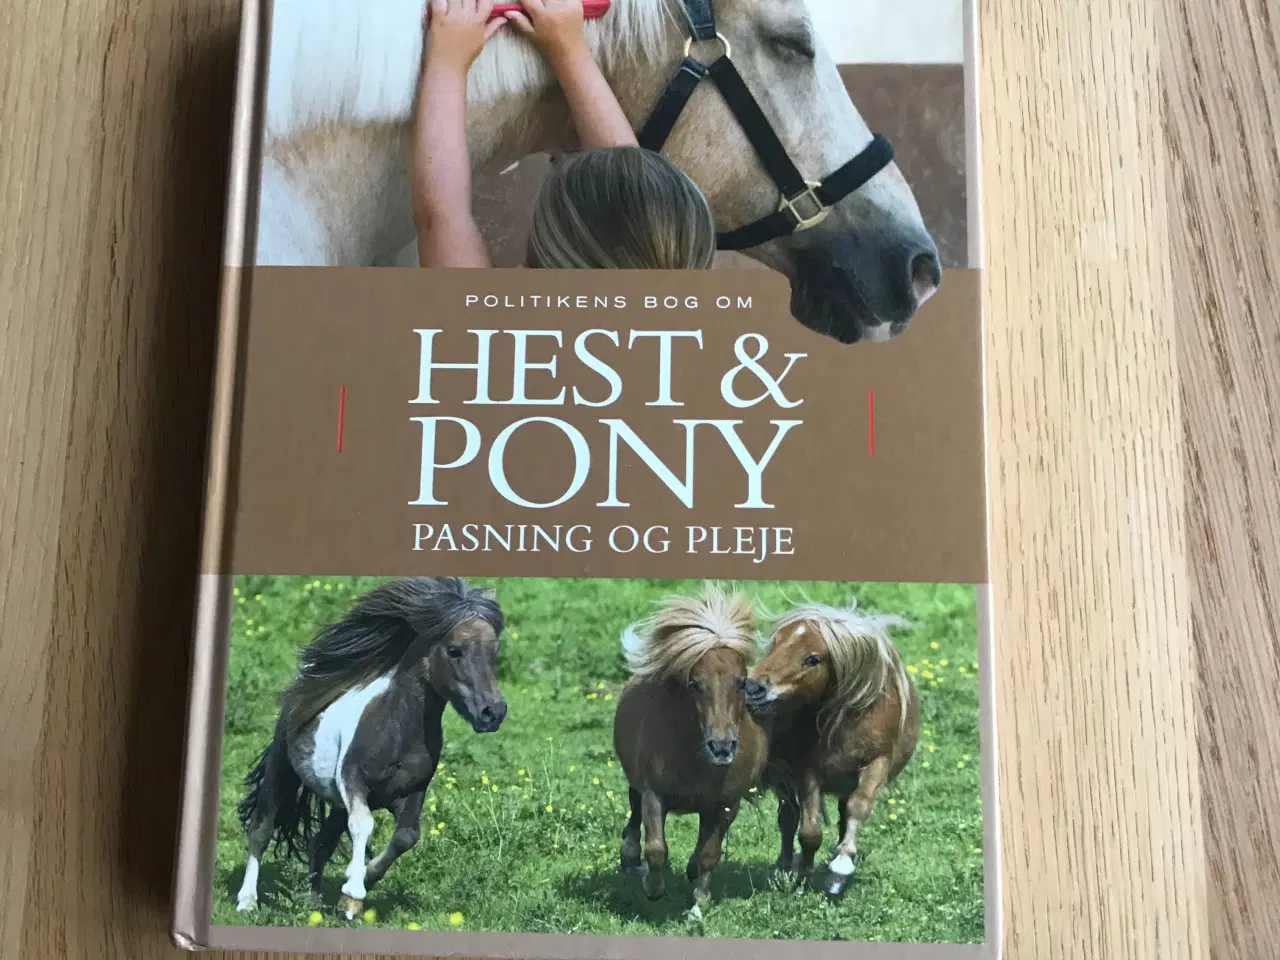 Billede 1 - Politikens bog om Hest & Pony - pasning og pleje